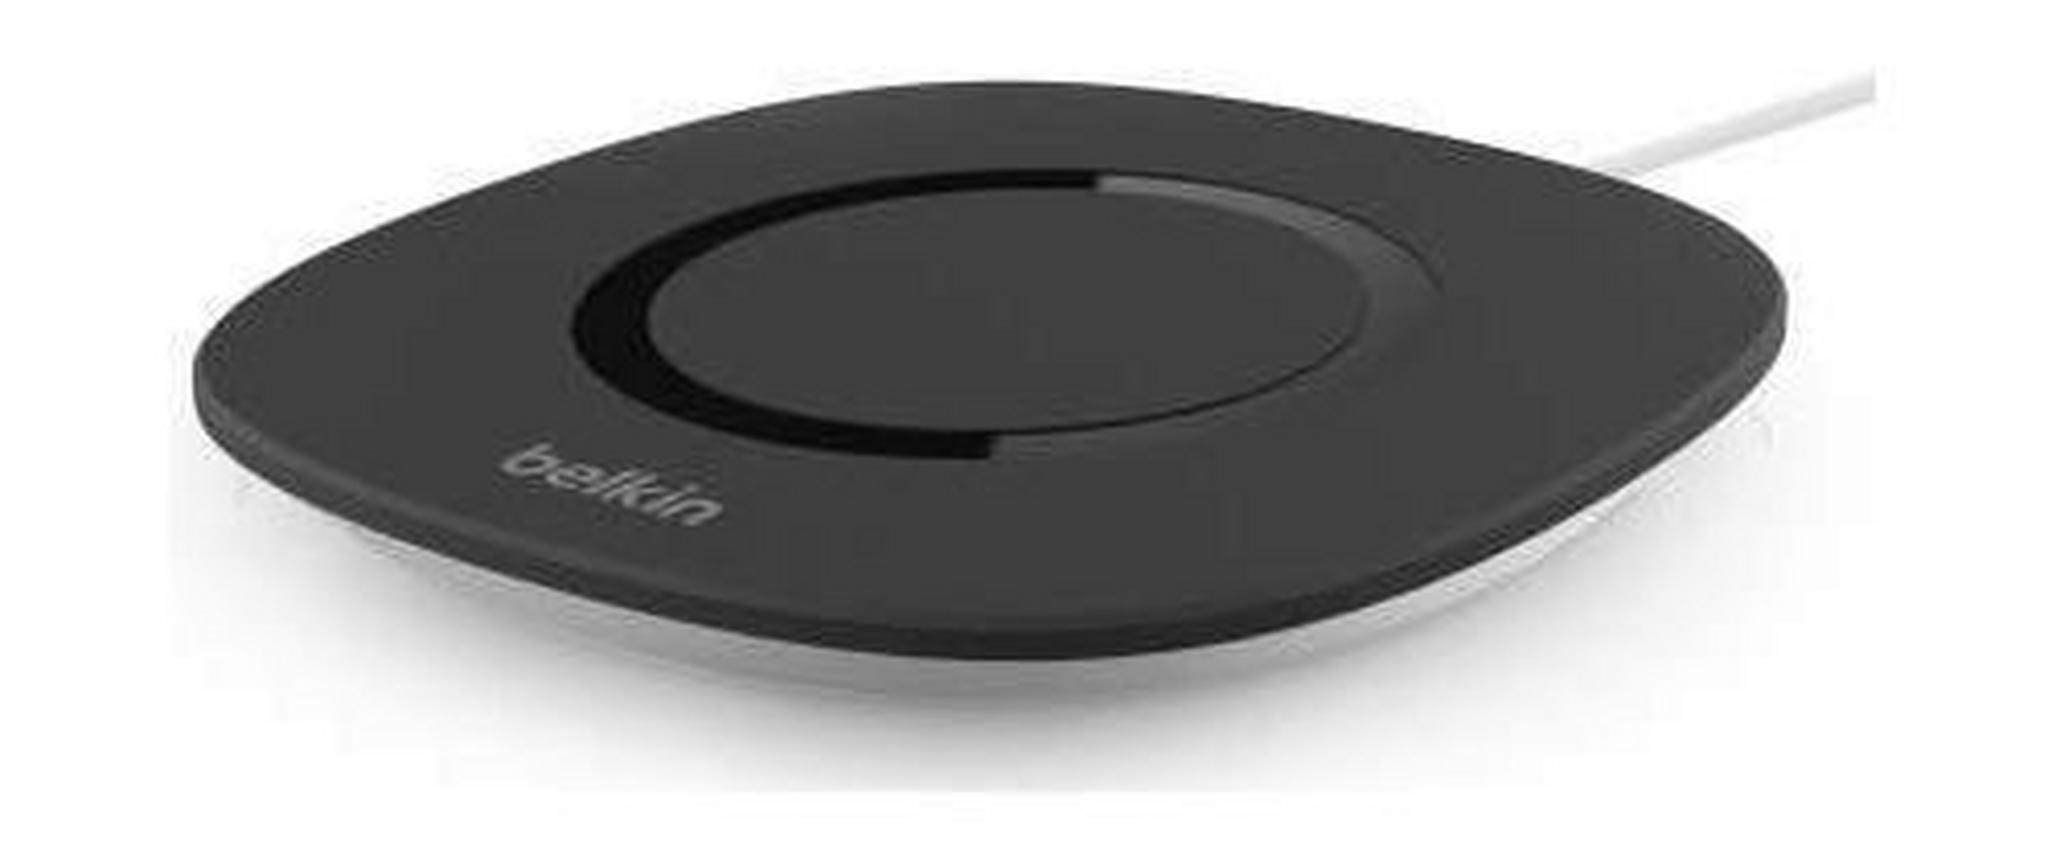 Belkin QI Wireless Charging Pad (F8M747BT) – Black